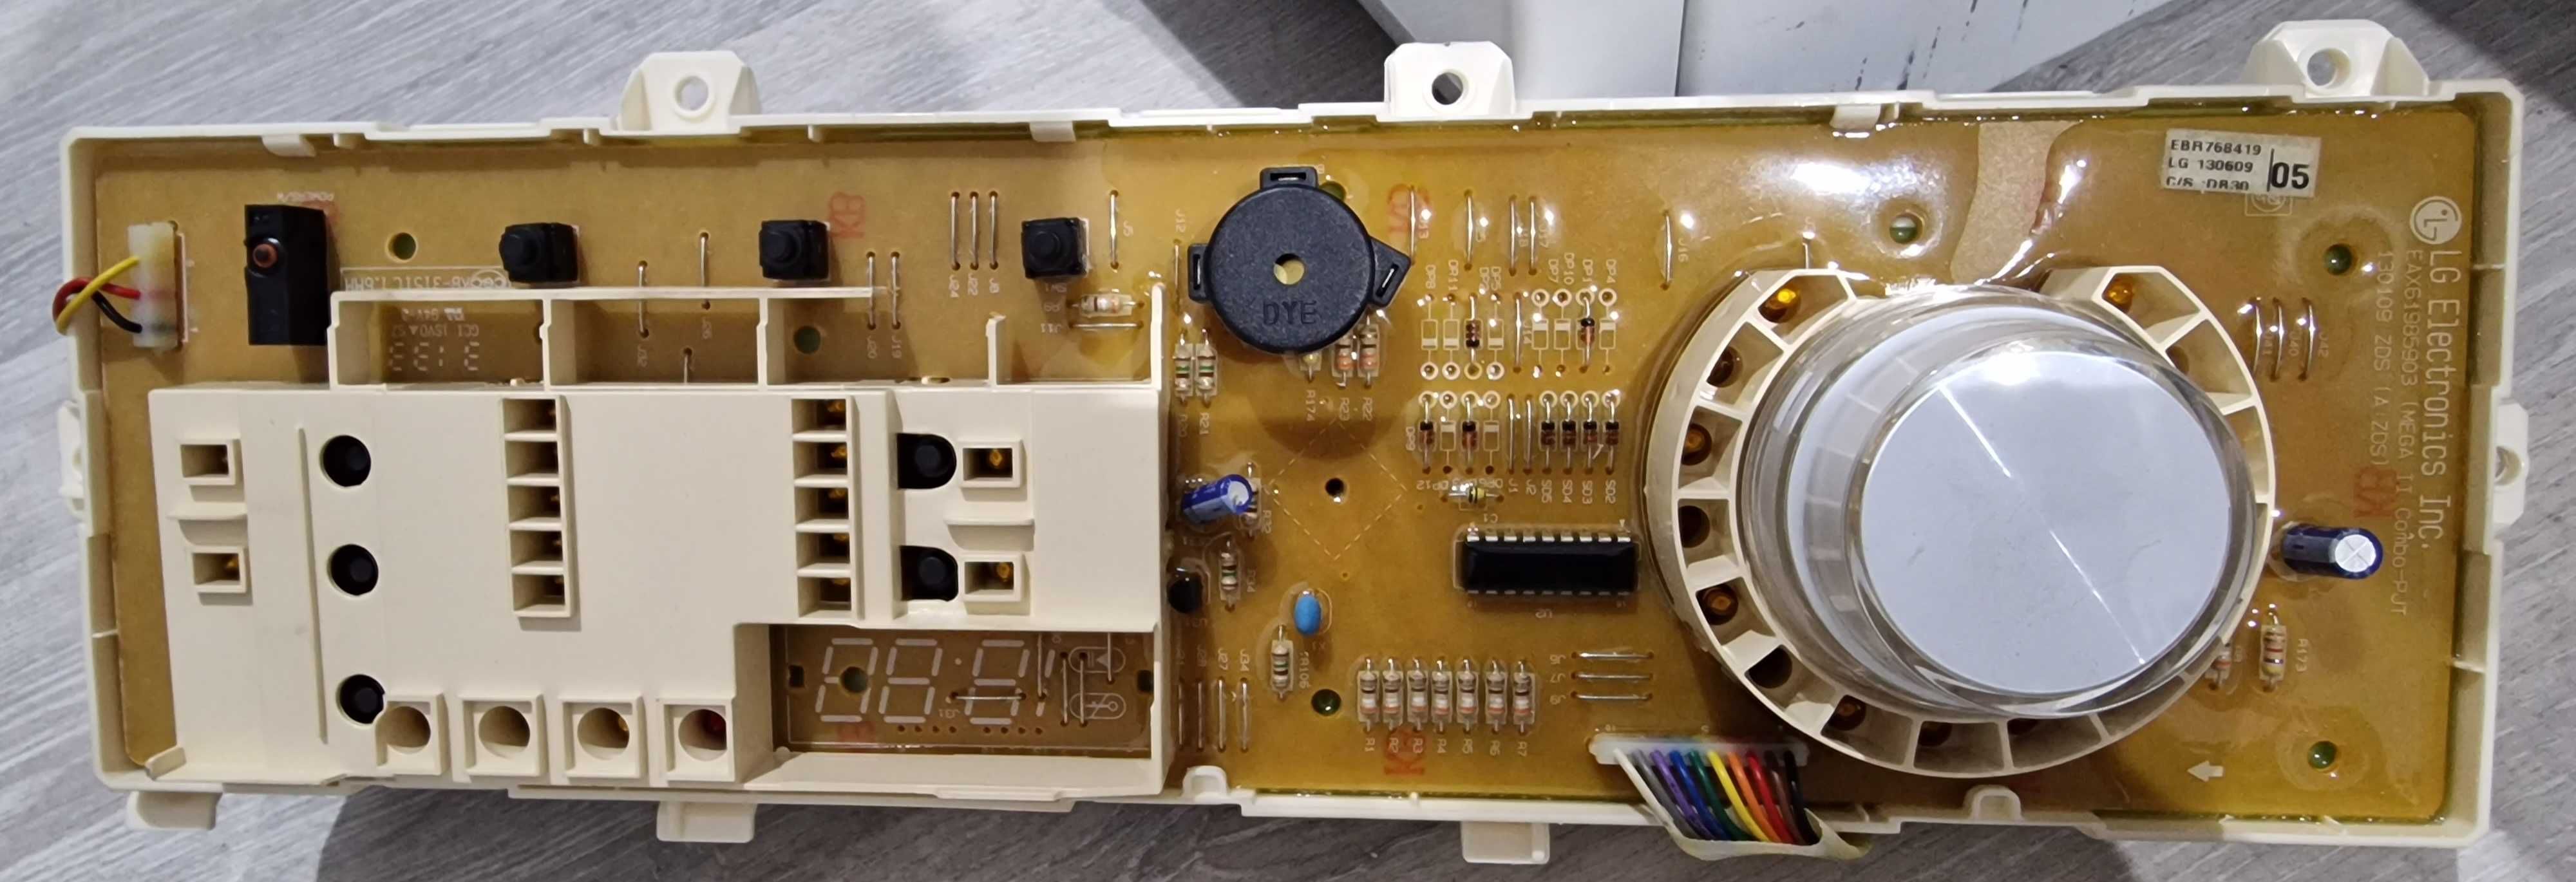 Calculator mașină de spălat rufe LG